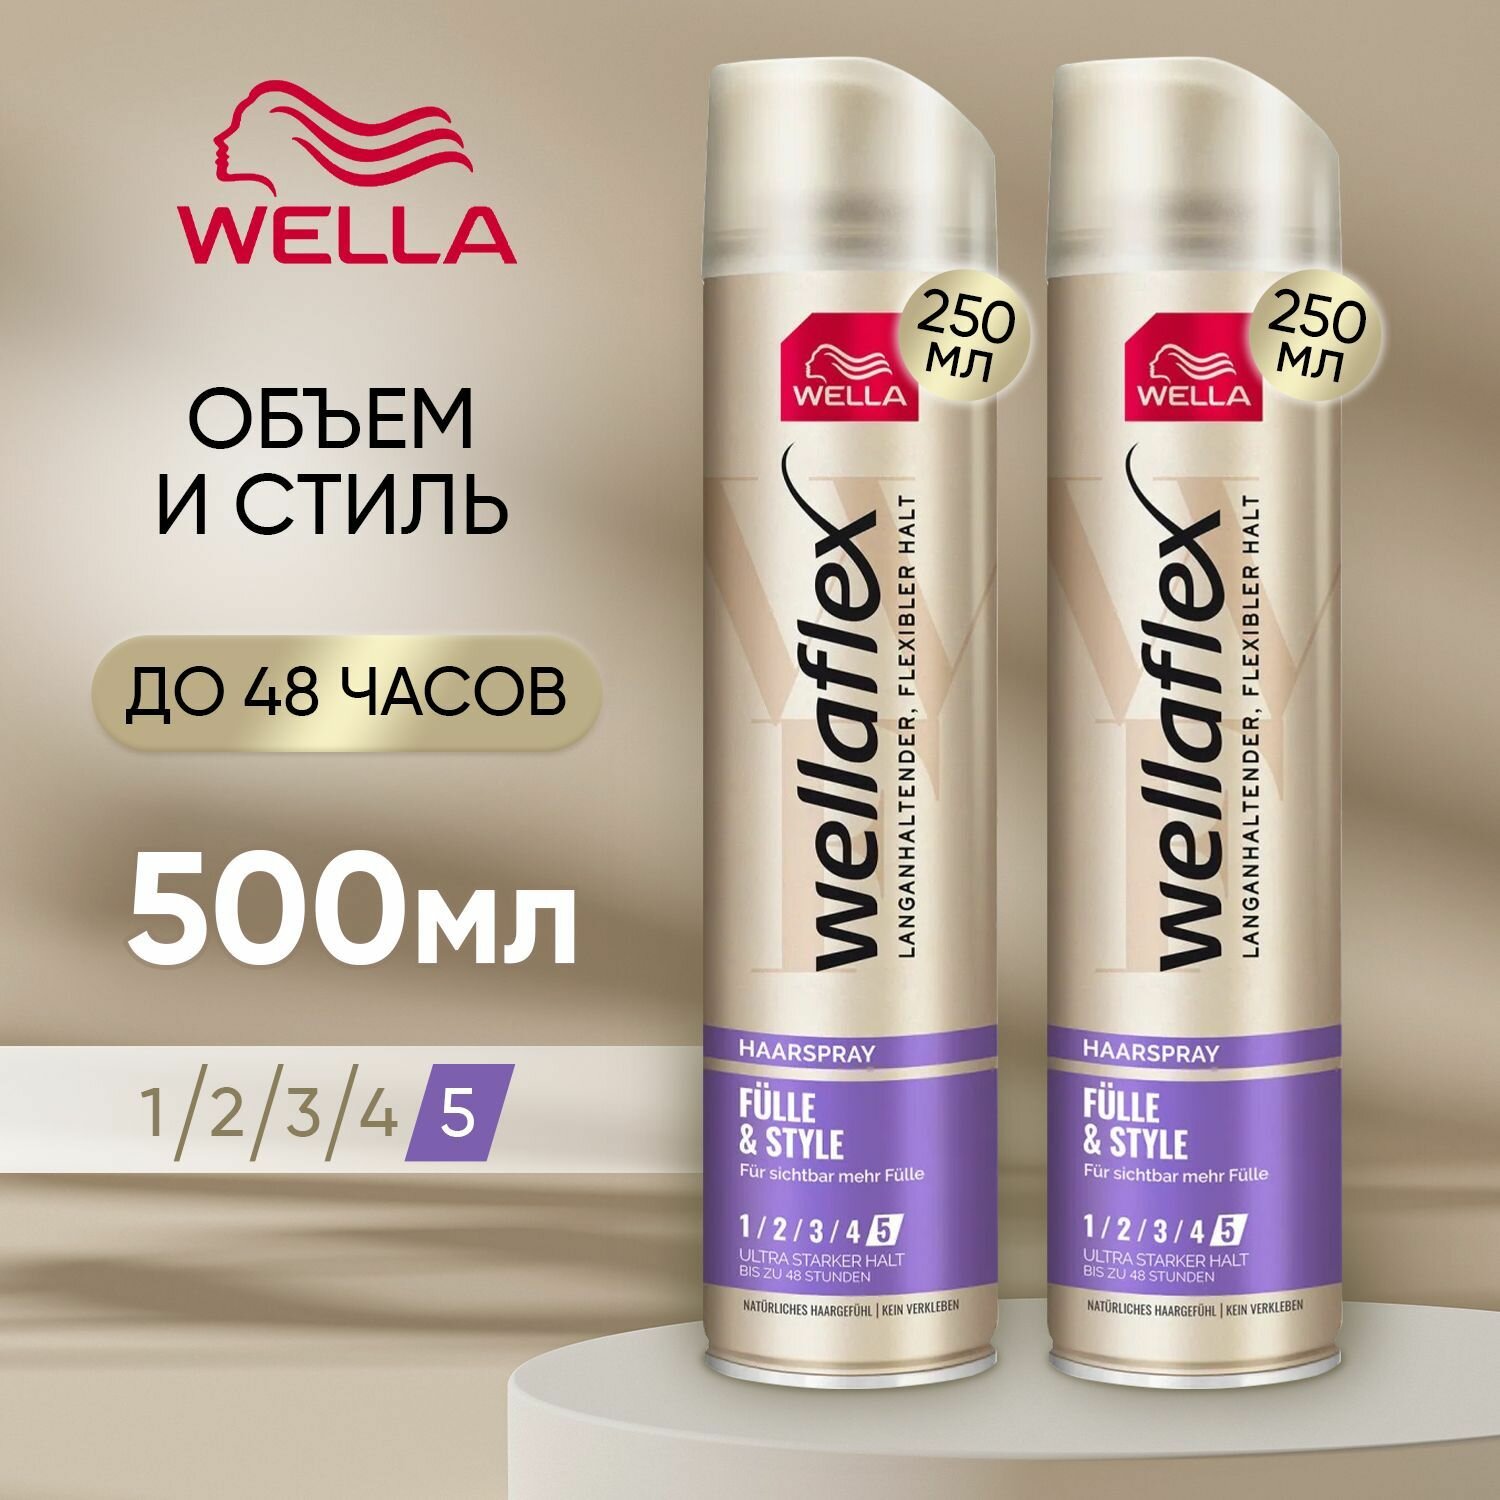 Лак для волос профессиональный объем WELLA Wellaflex насыщенность И стиль для тонких волос сверхсильной фиксации (5), 500 мл, набор (2 бутылочки по 250 мл)